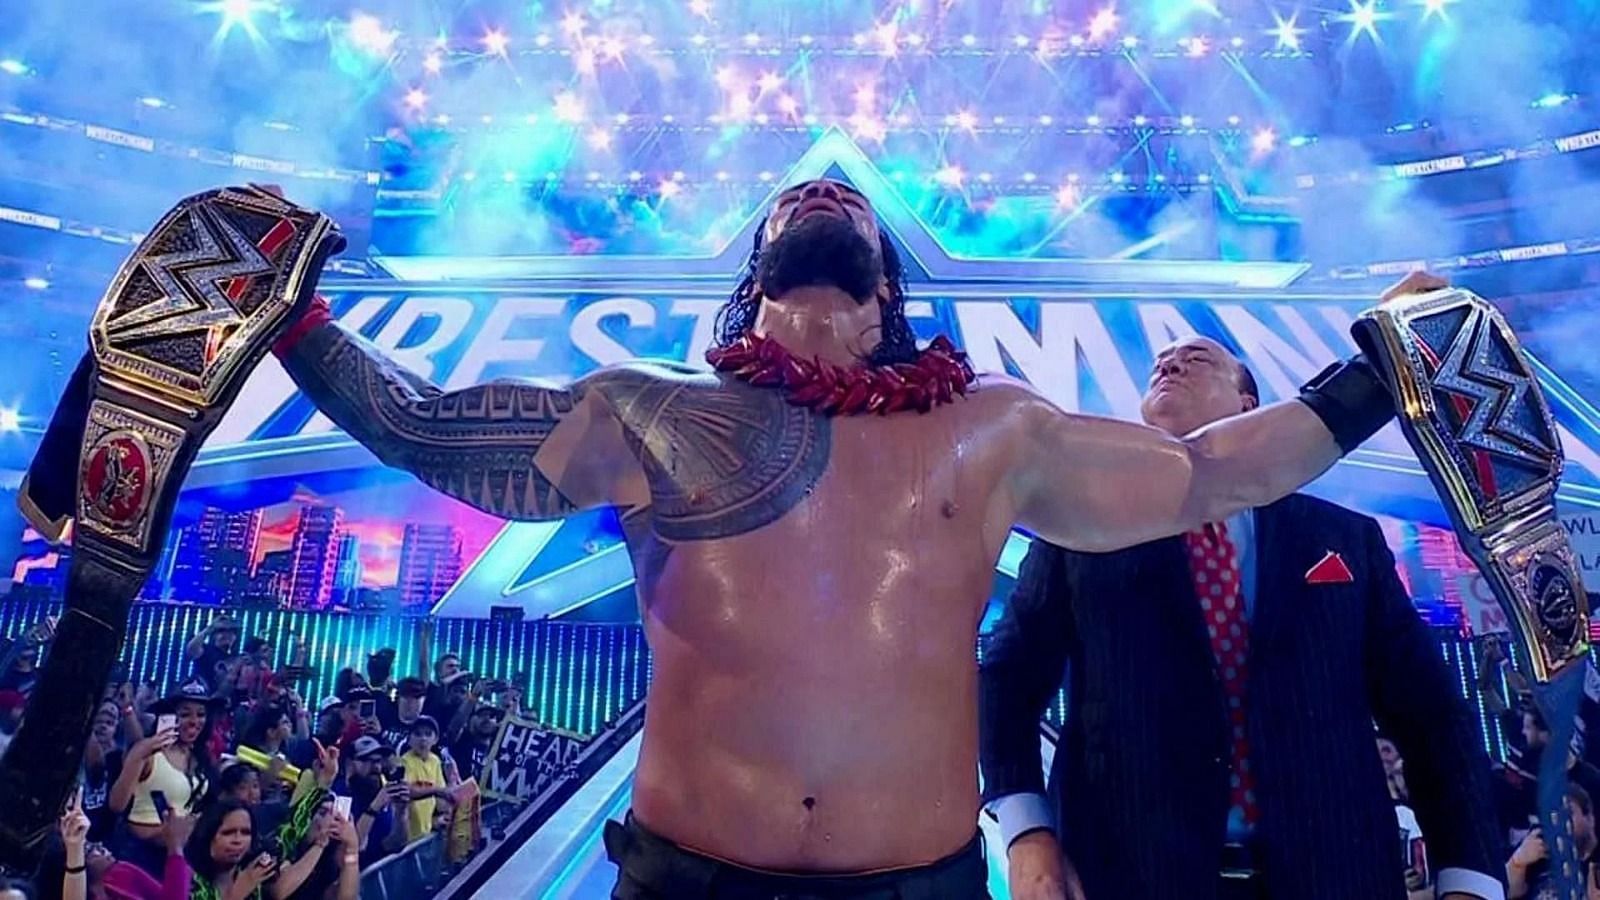  अनडिस्प्यूटेड WWE यूनिवर्सल चैंपियन रोमन रेंस ने हाल में ही अपना टाइटल डिफेंड किया था